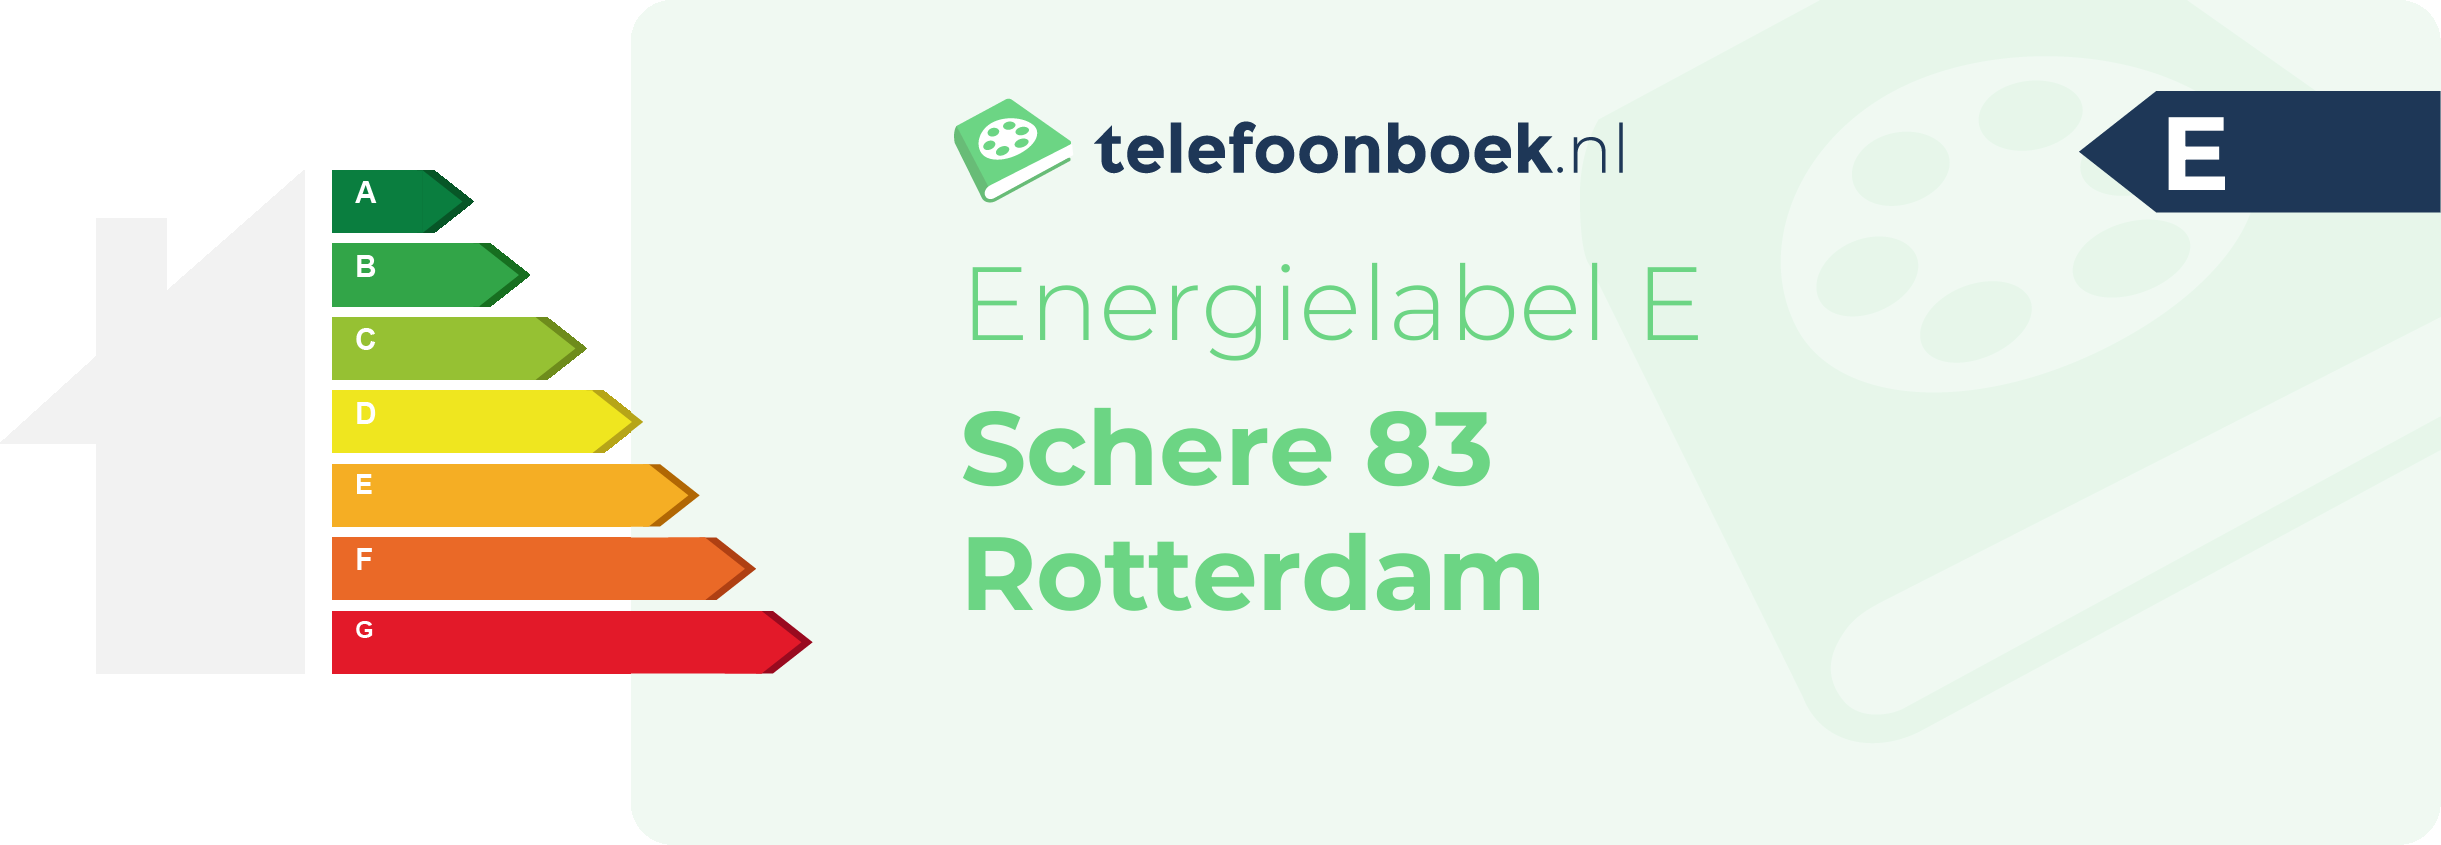 Energielabel Schere 83 Rotterdam